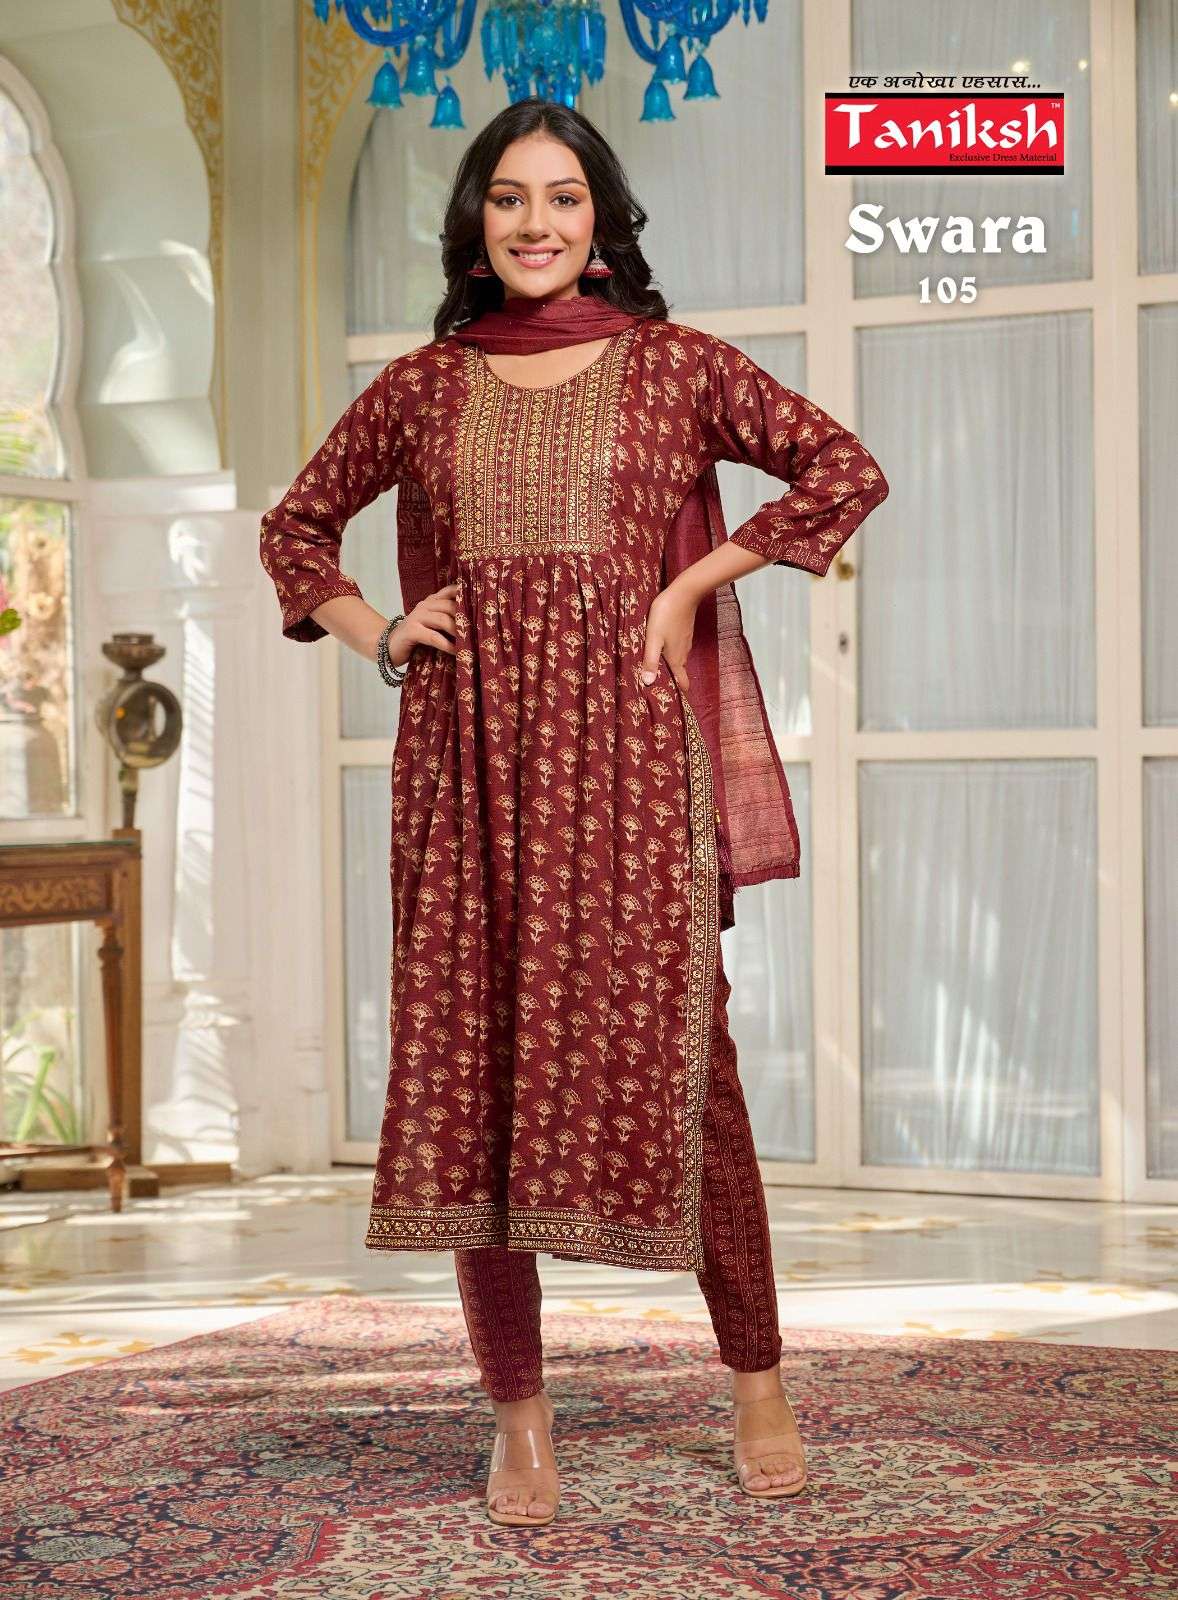 taniksh fashion swara 101-108 series fancy designer kurtis catalogue surat 